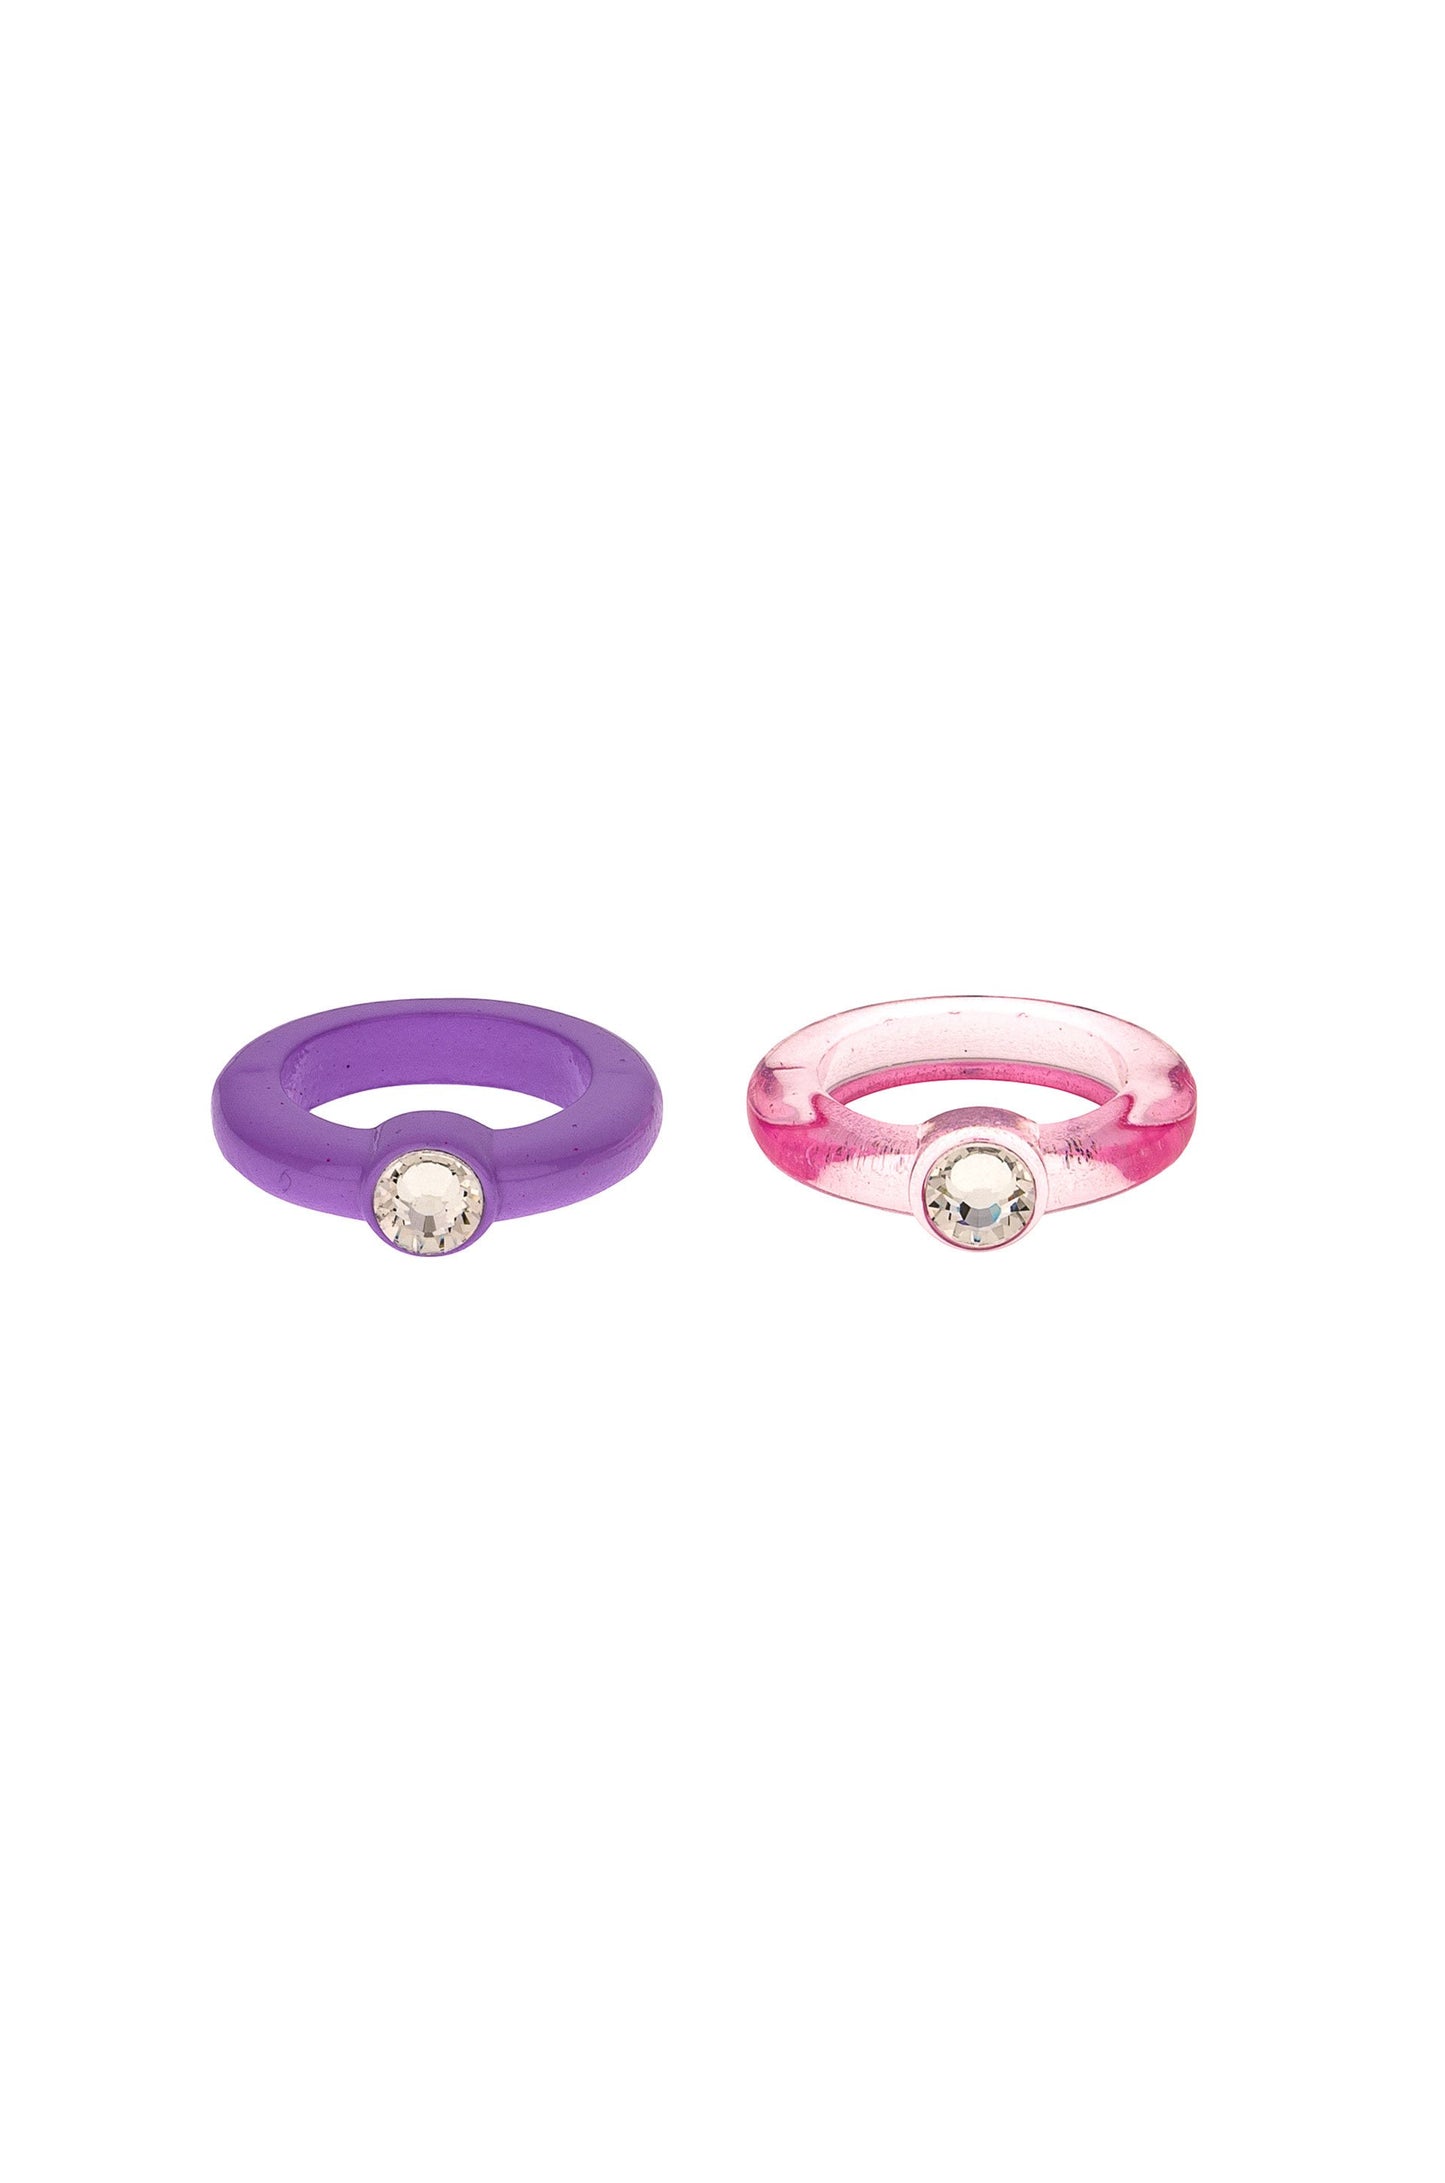 Transparent Pink & Matte Purple Resin Ring Set on white